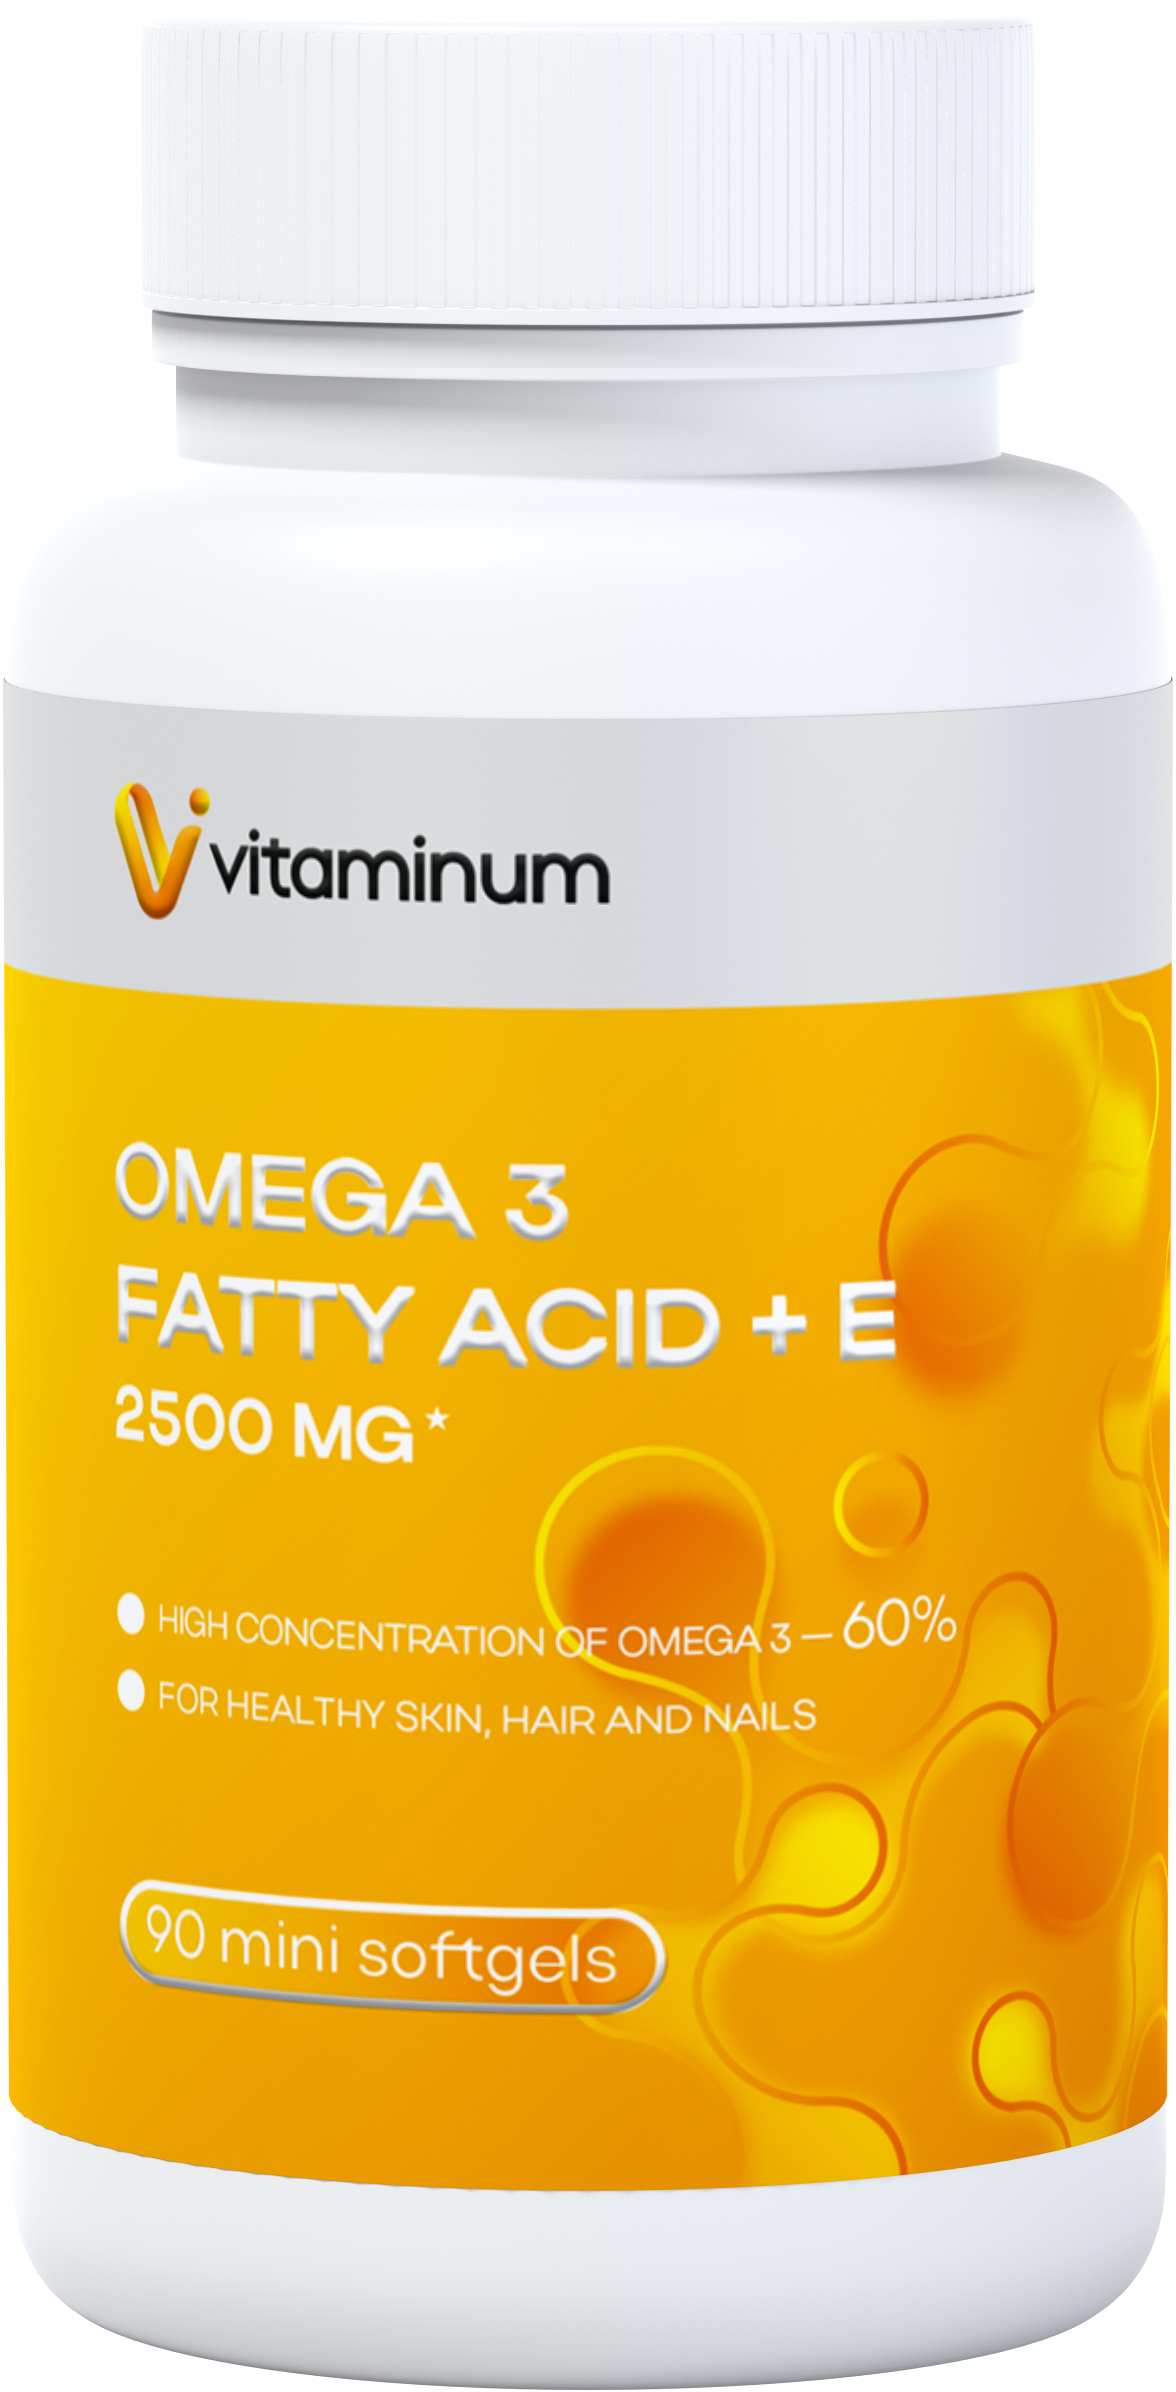  Vitaminum ОМЕГА 3 60% + витамин Е (2500 MG*) 90 капсул 700 мг   в Нефтеюганске